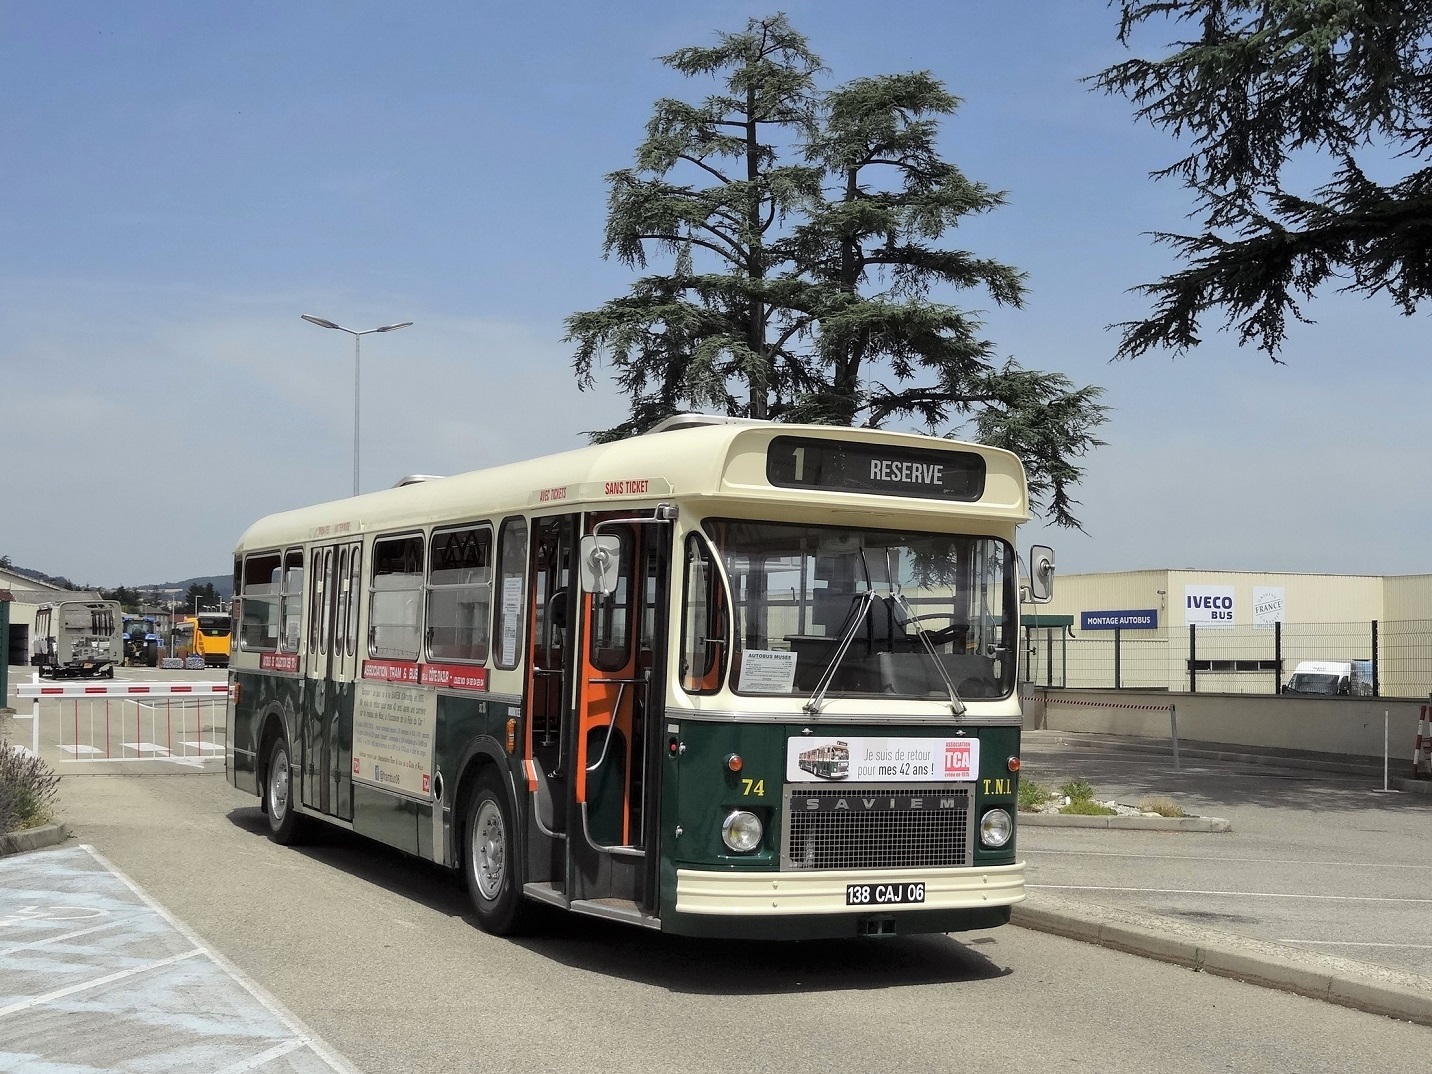 5bTCA5d 74 l27usine Iveco Bus d27Annonay droite motage bus barrire entre 08 07 2017 F. Giana